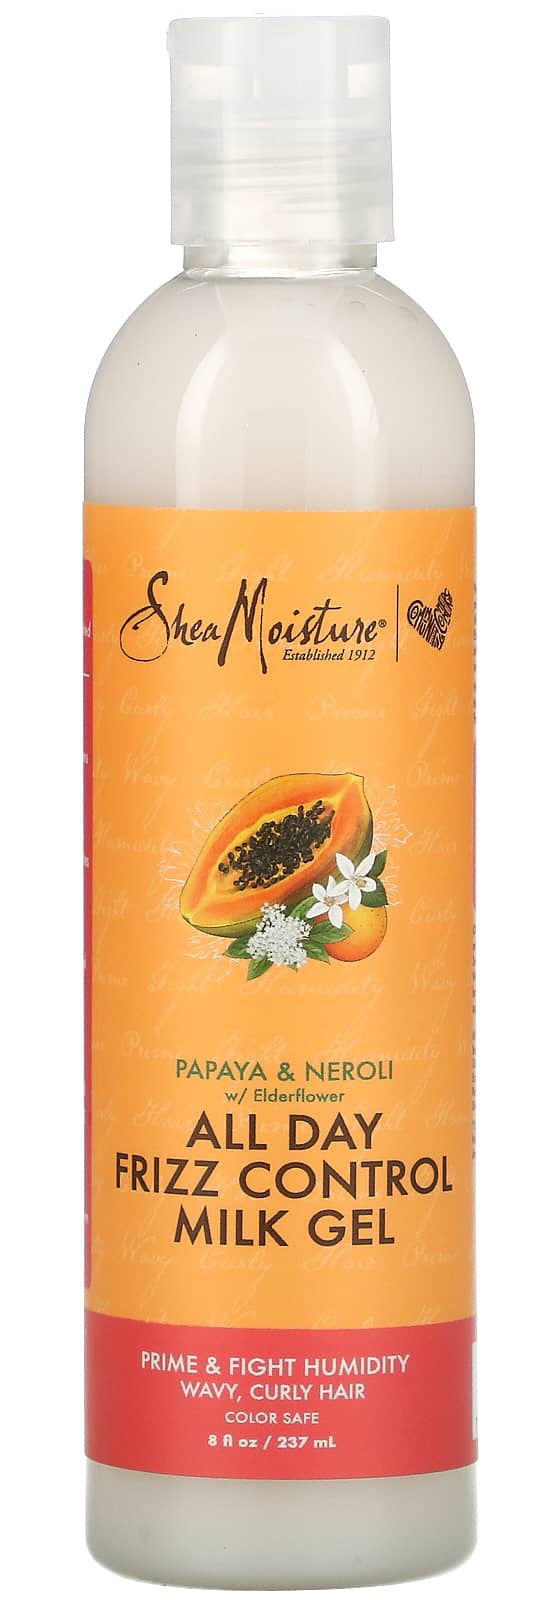 SheaMoisture Papaya & Neroli All Day Frizz Control Milk Gel